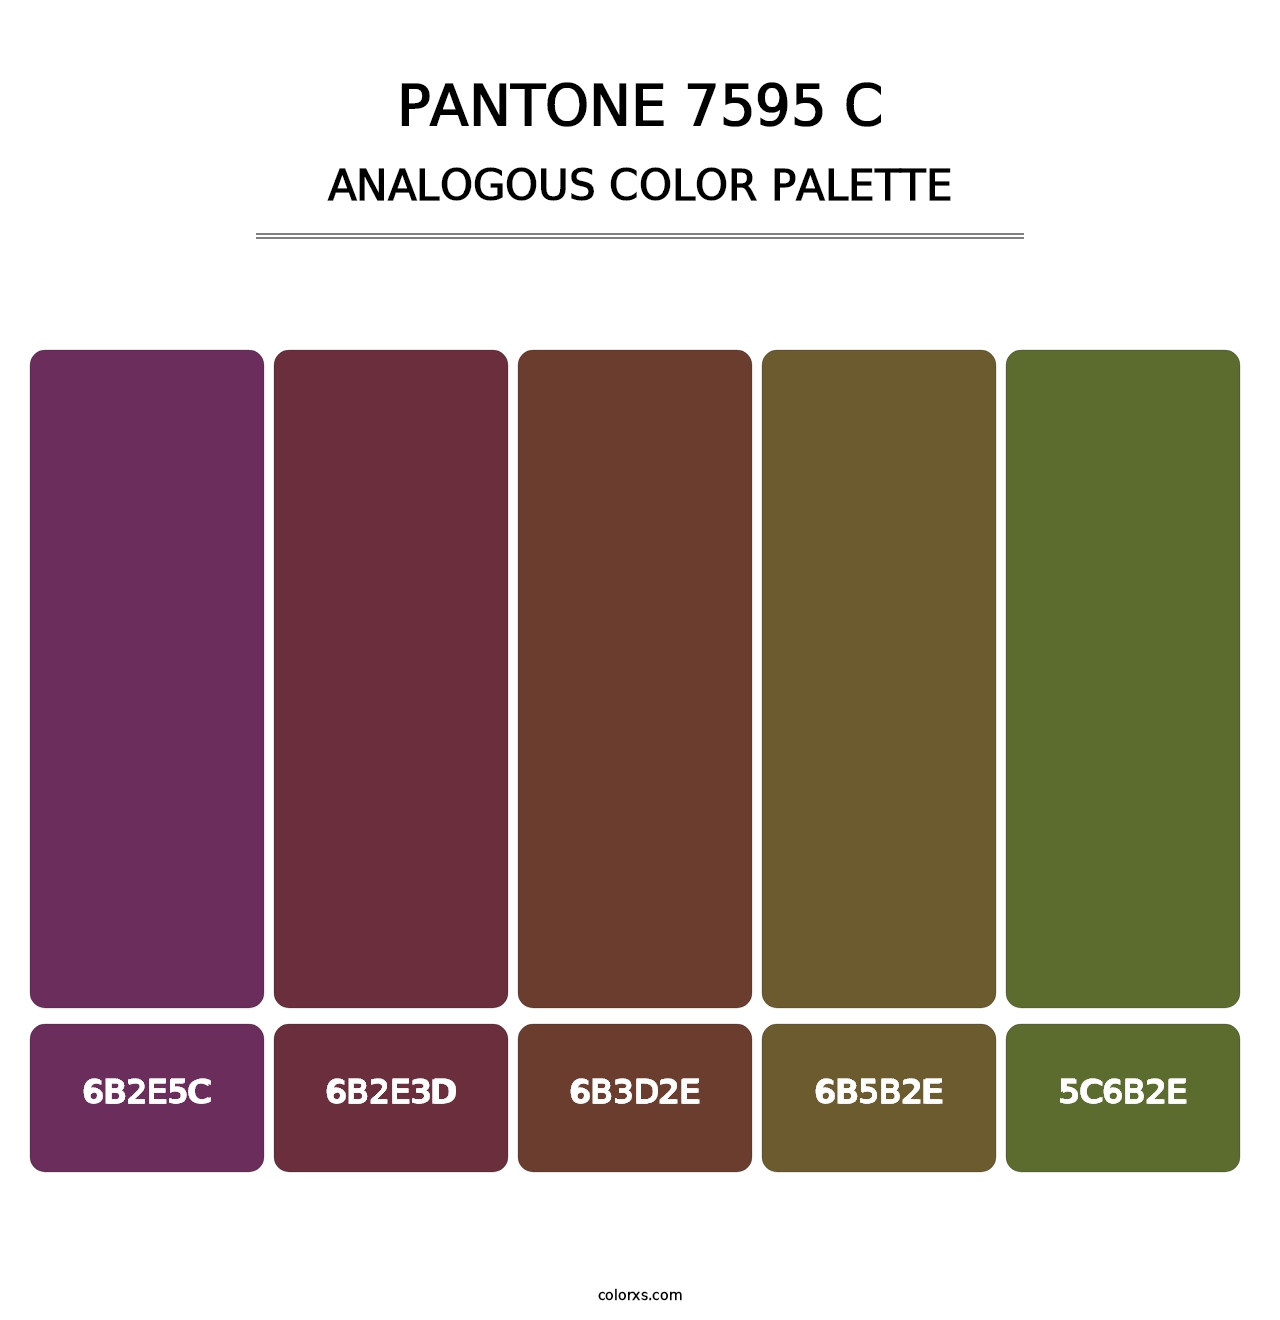 PANTONE 7595 C - Analogous Color Palette